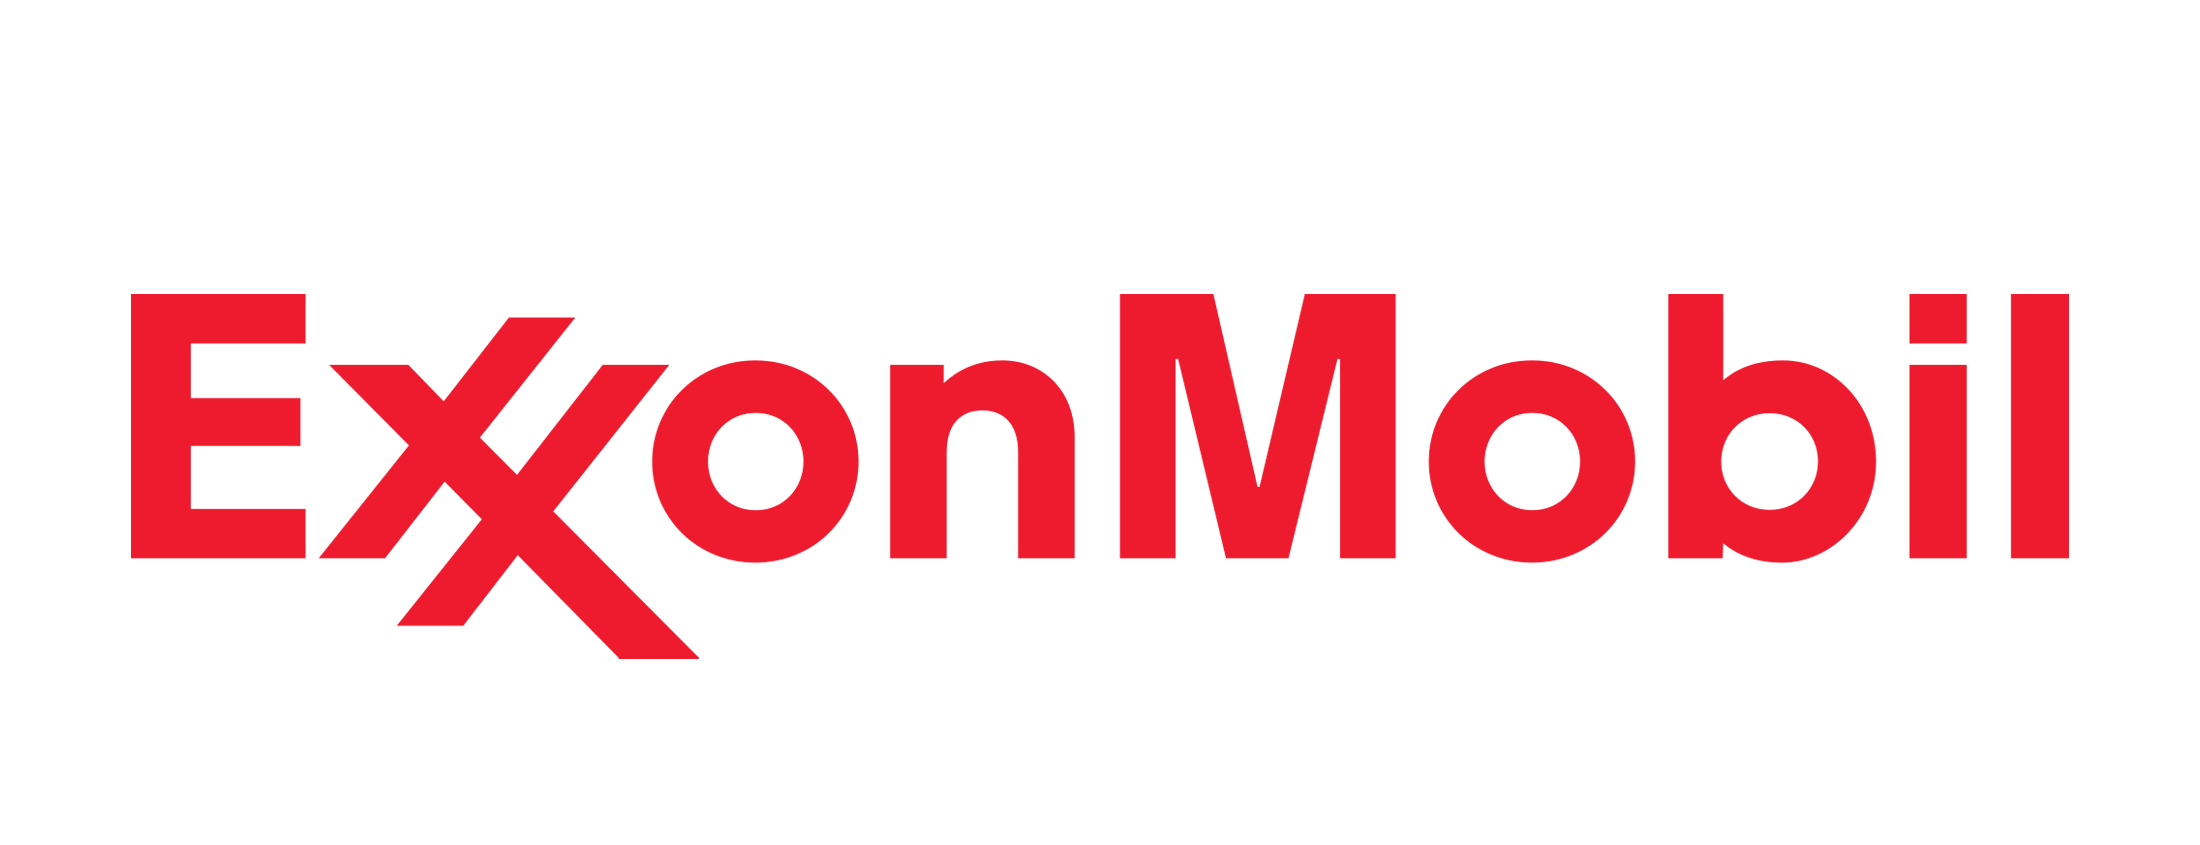 Exxon-Mobil-Logo